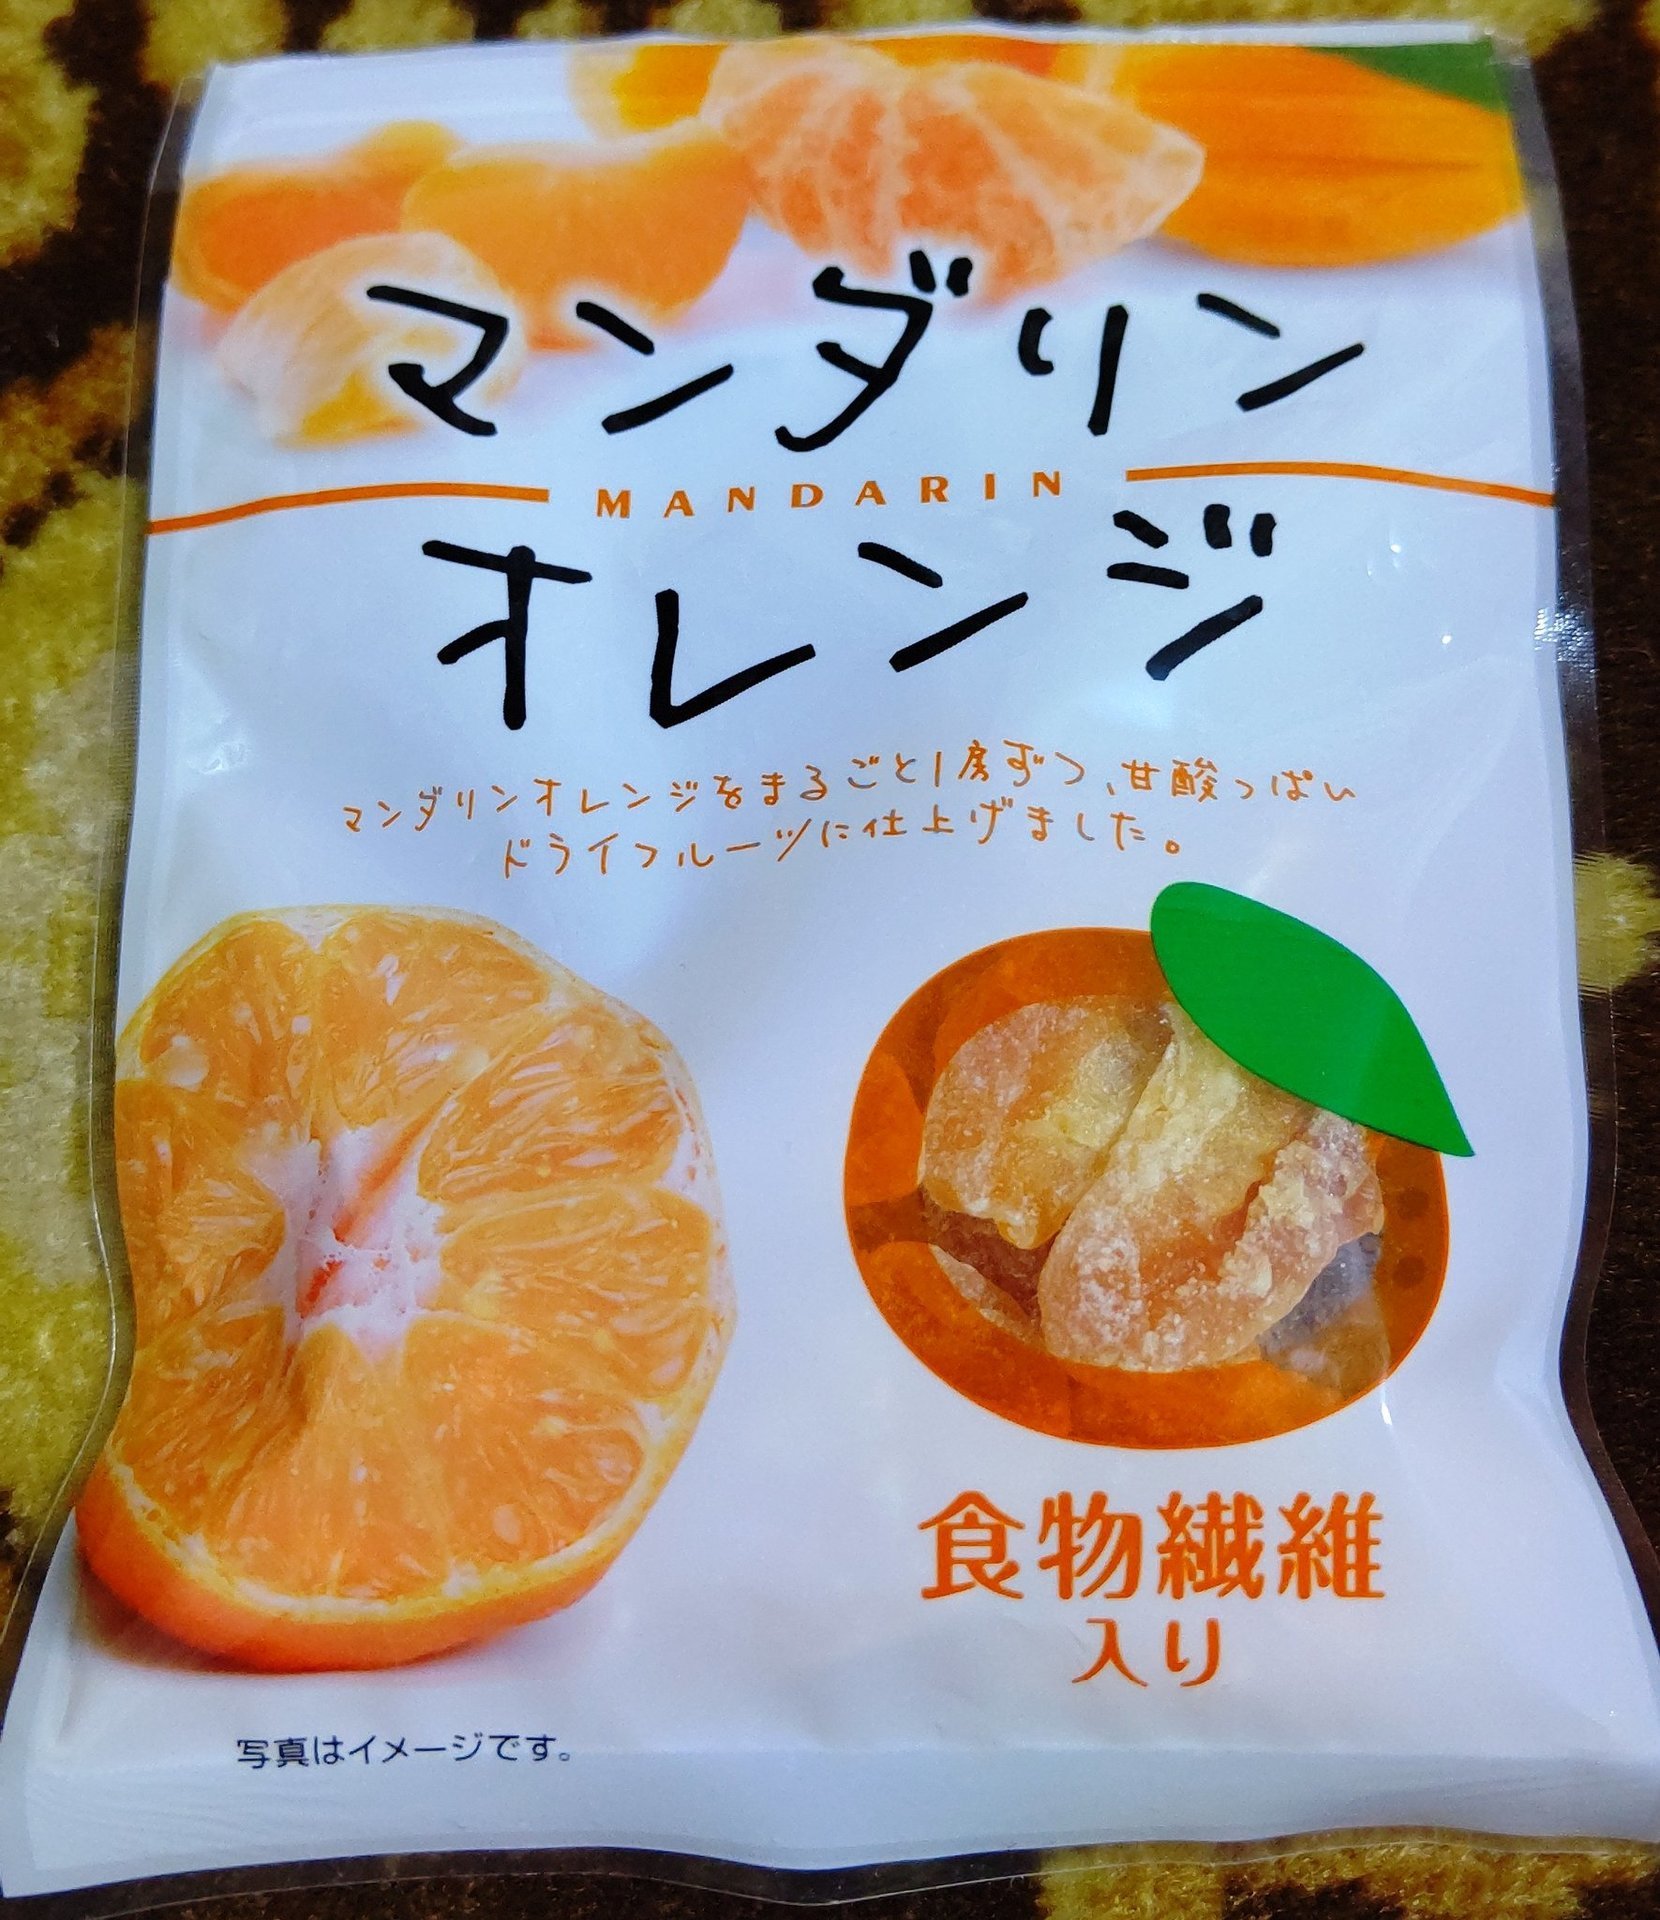 共立食品 マンダリンオレンジ ドライフルーツ アフィリエイトブログ